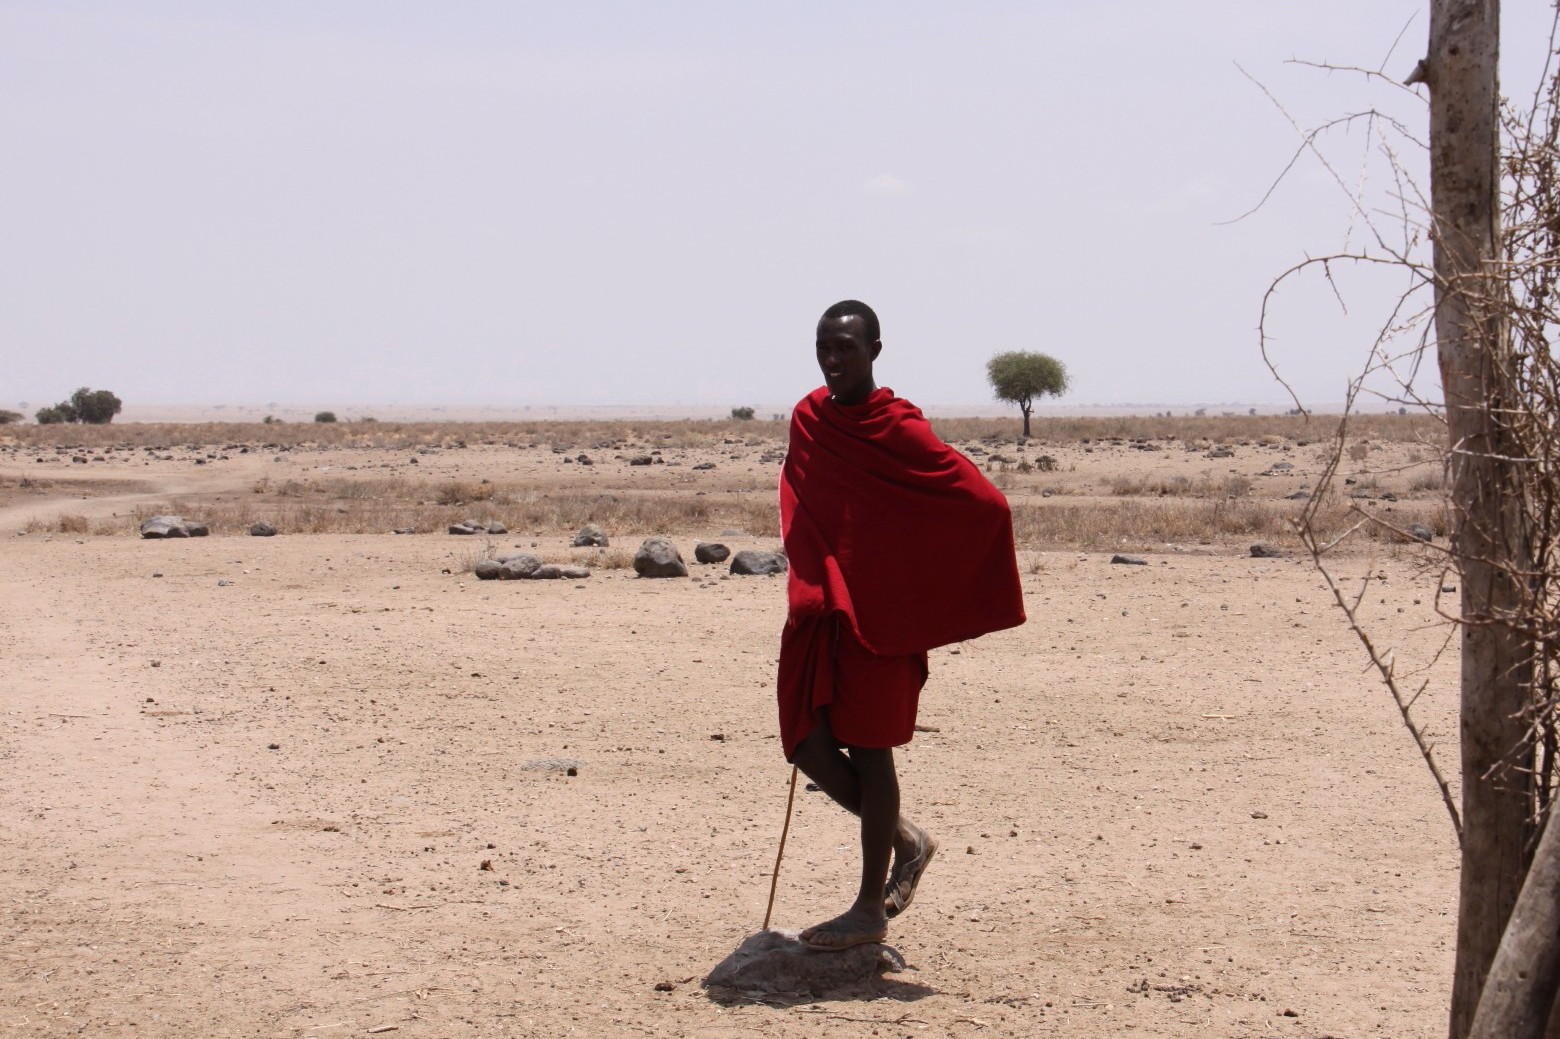 ケニア旅行記2013 ― (2)マサイ族の村: 庭仕事ときどき読書 ― はるかの庭